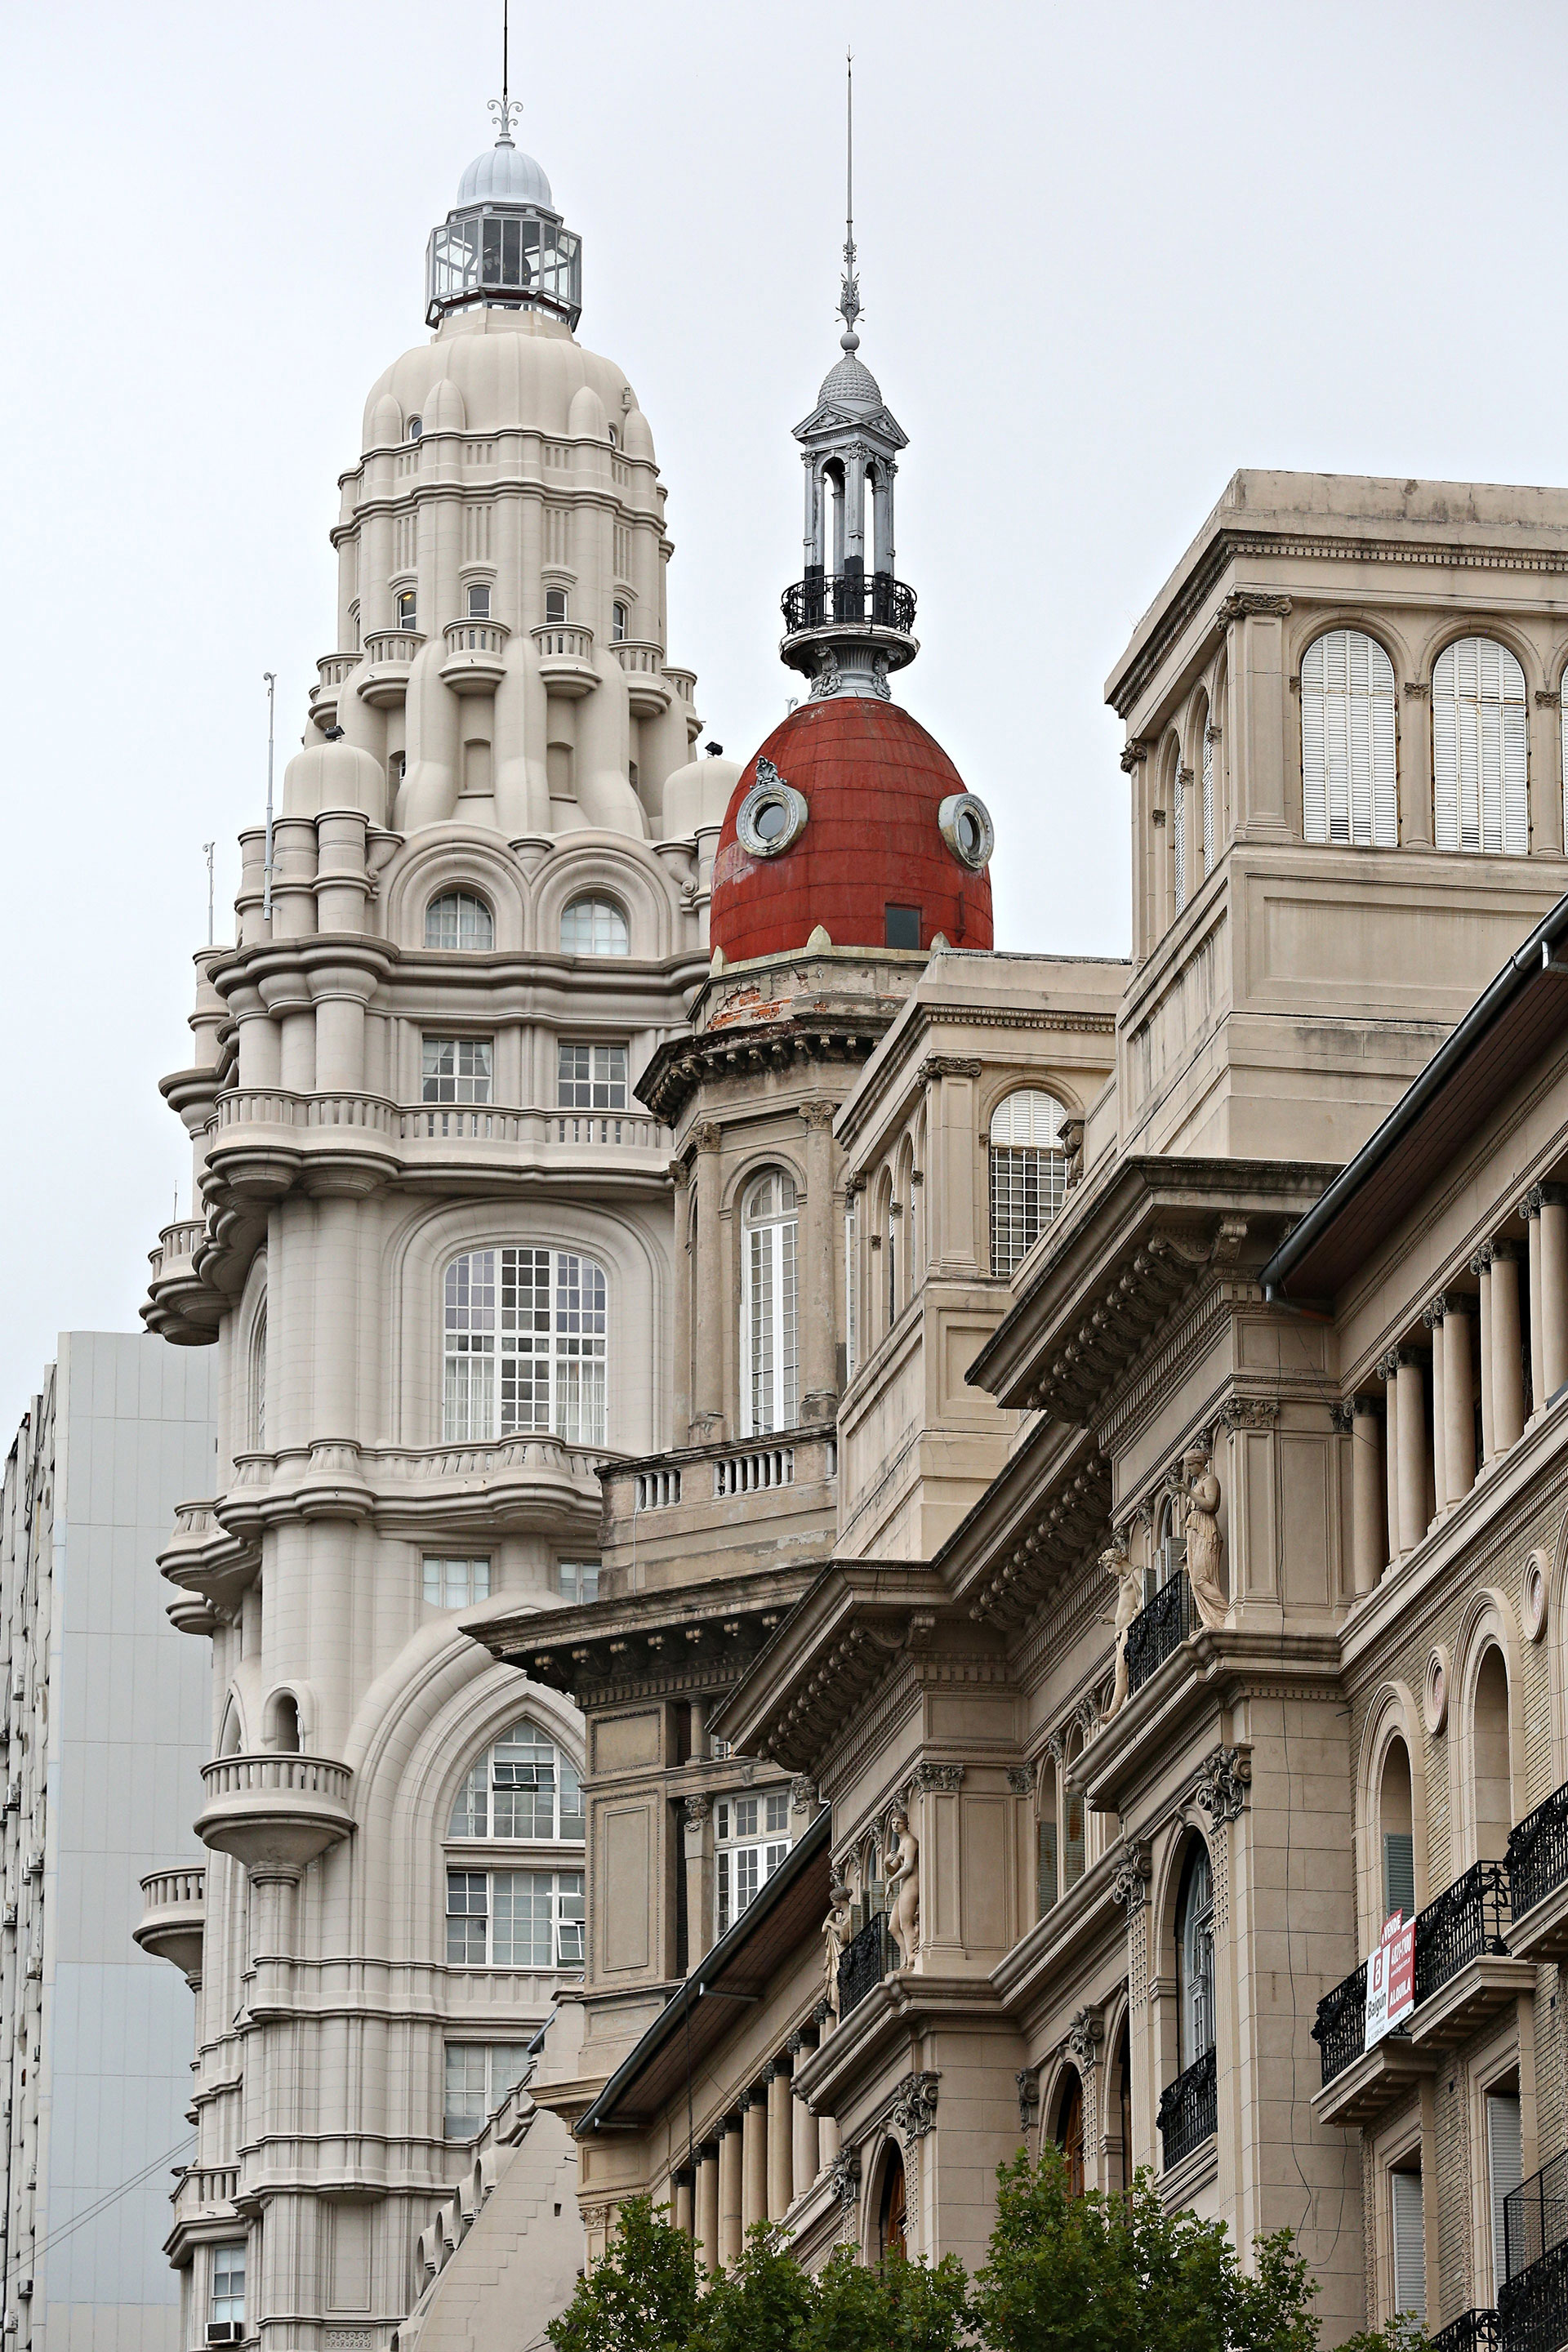 En la otra esquina del edificio conocido como La Inmobiliaria hay otra cúpula gemela y detrás se observa otro inmueble emblemático: el Palacio Barolo